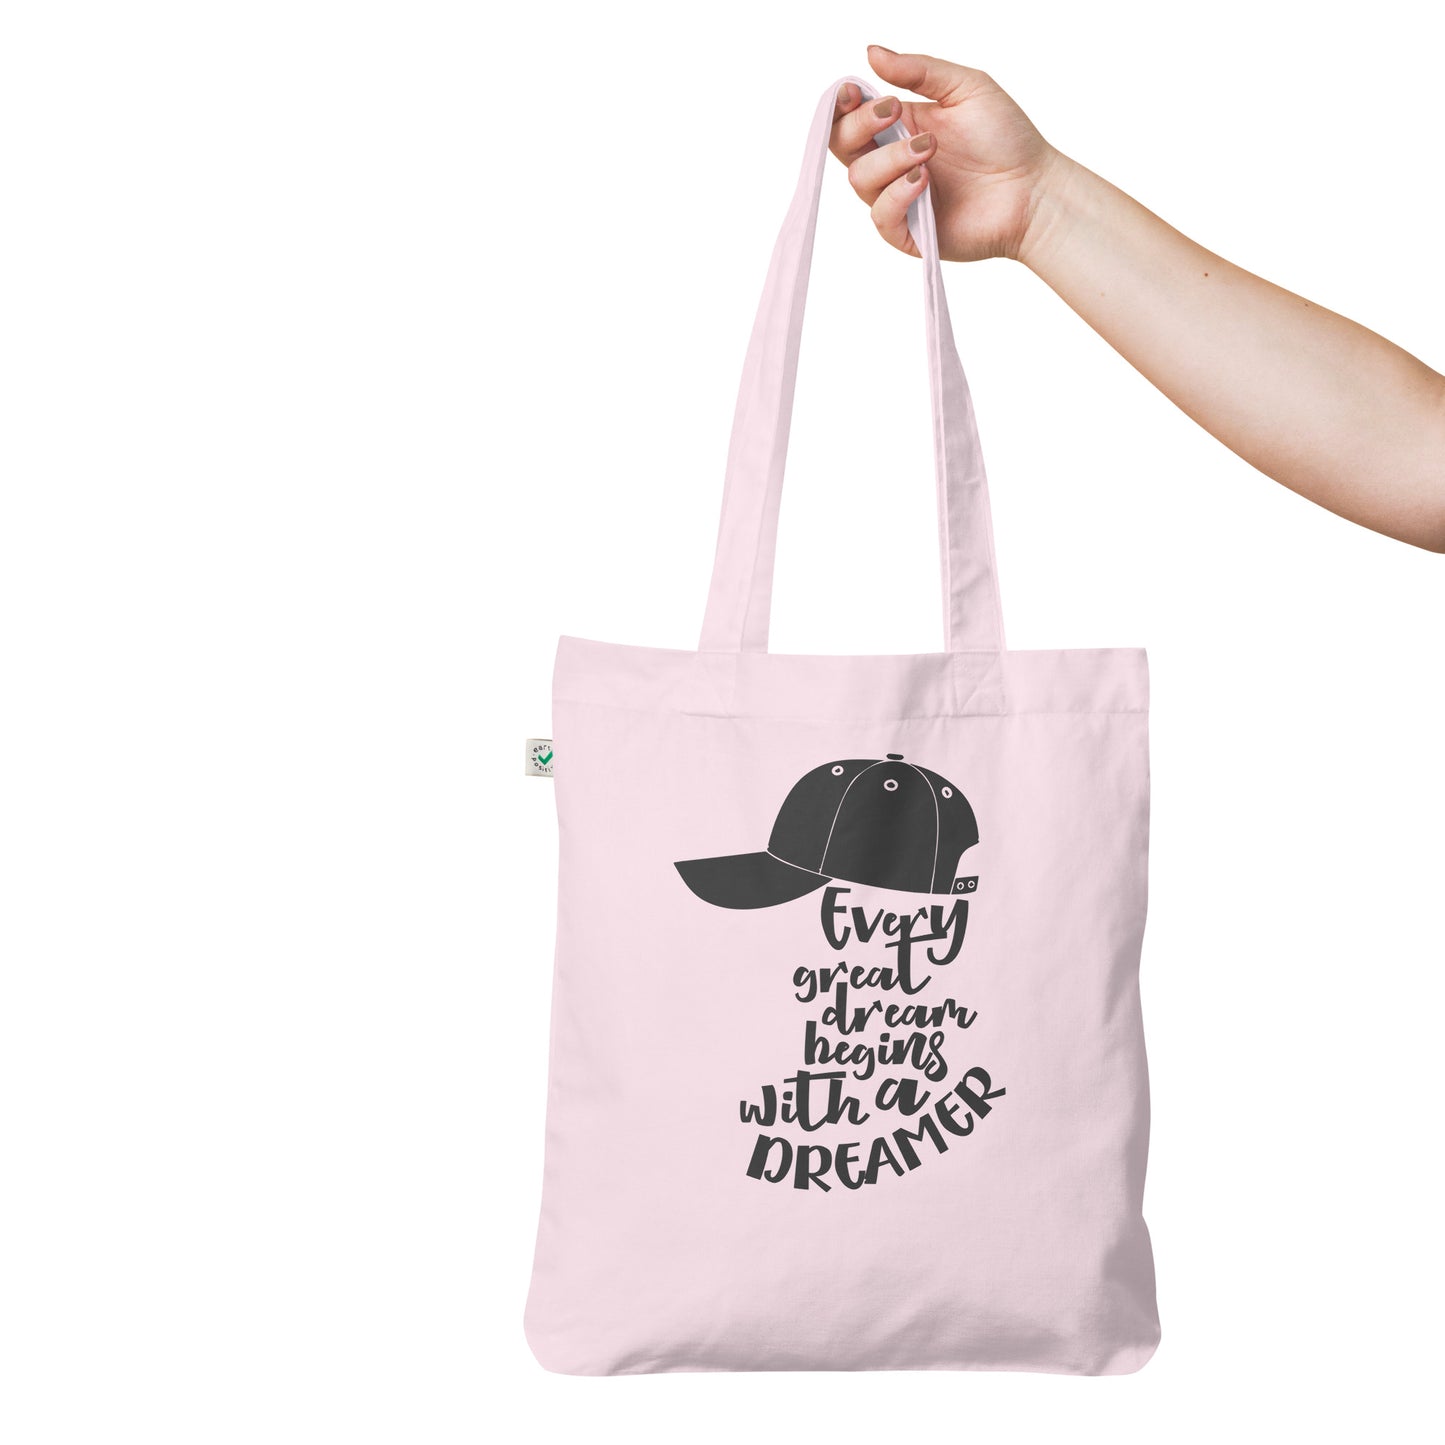 Dreamer - Organic fashion tote bag - HobbyMeFree